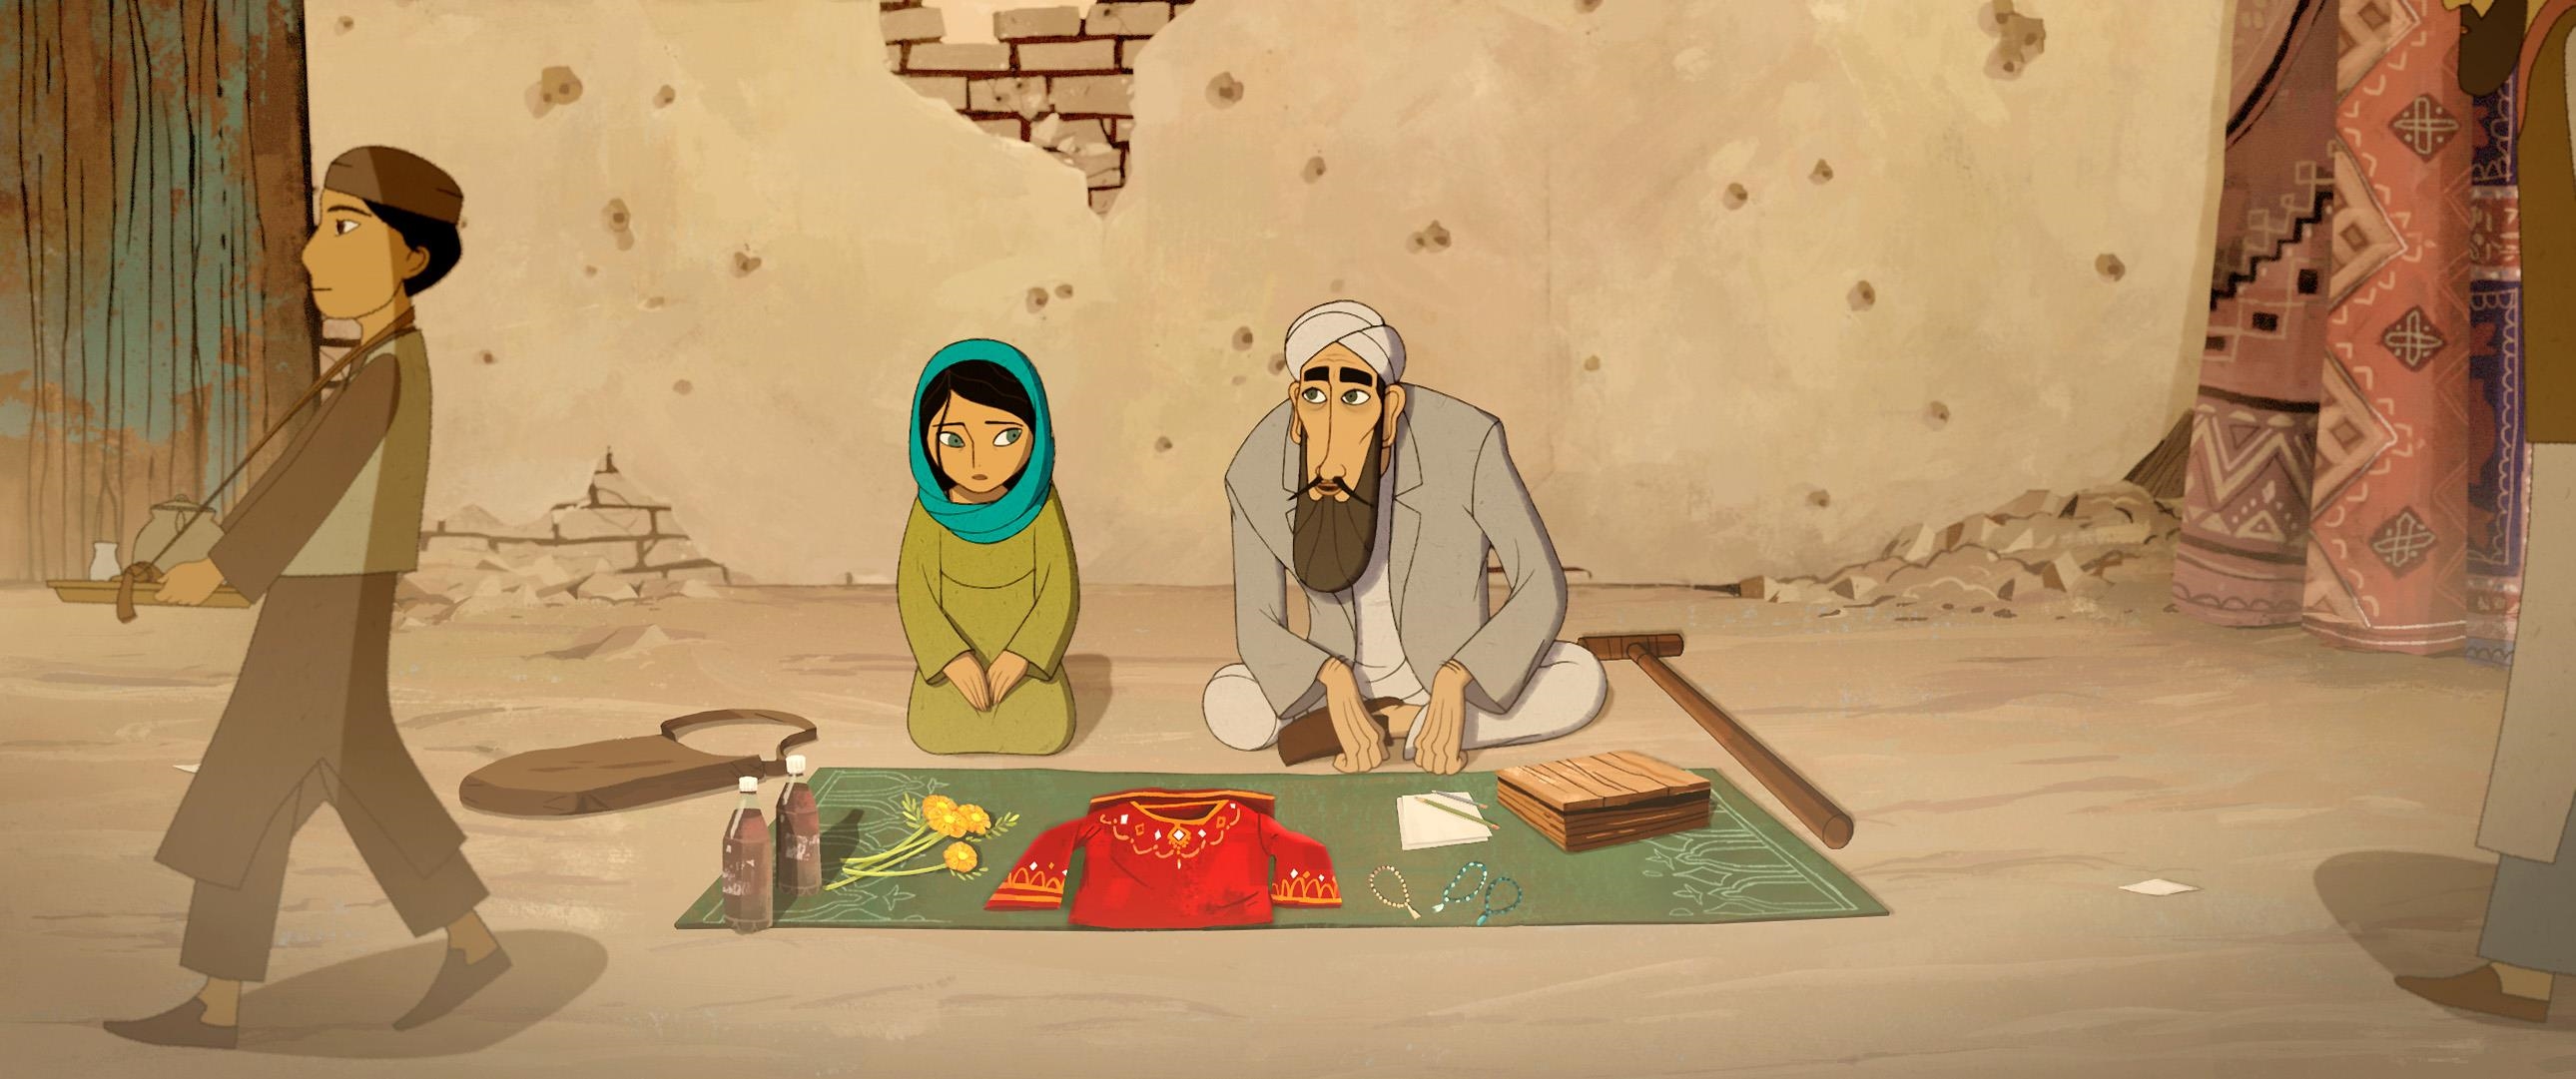 Image du film Parvana, une enfance en Afghanistan d326327c-535d-4aa1-bec9-c3ca62a1bc94